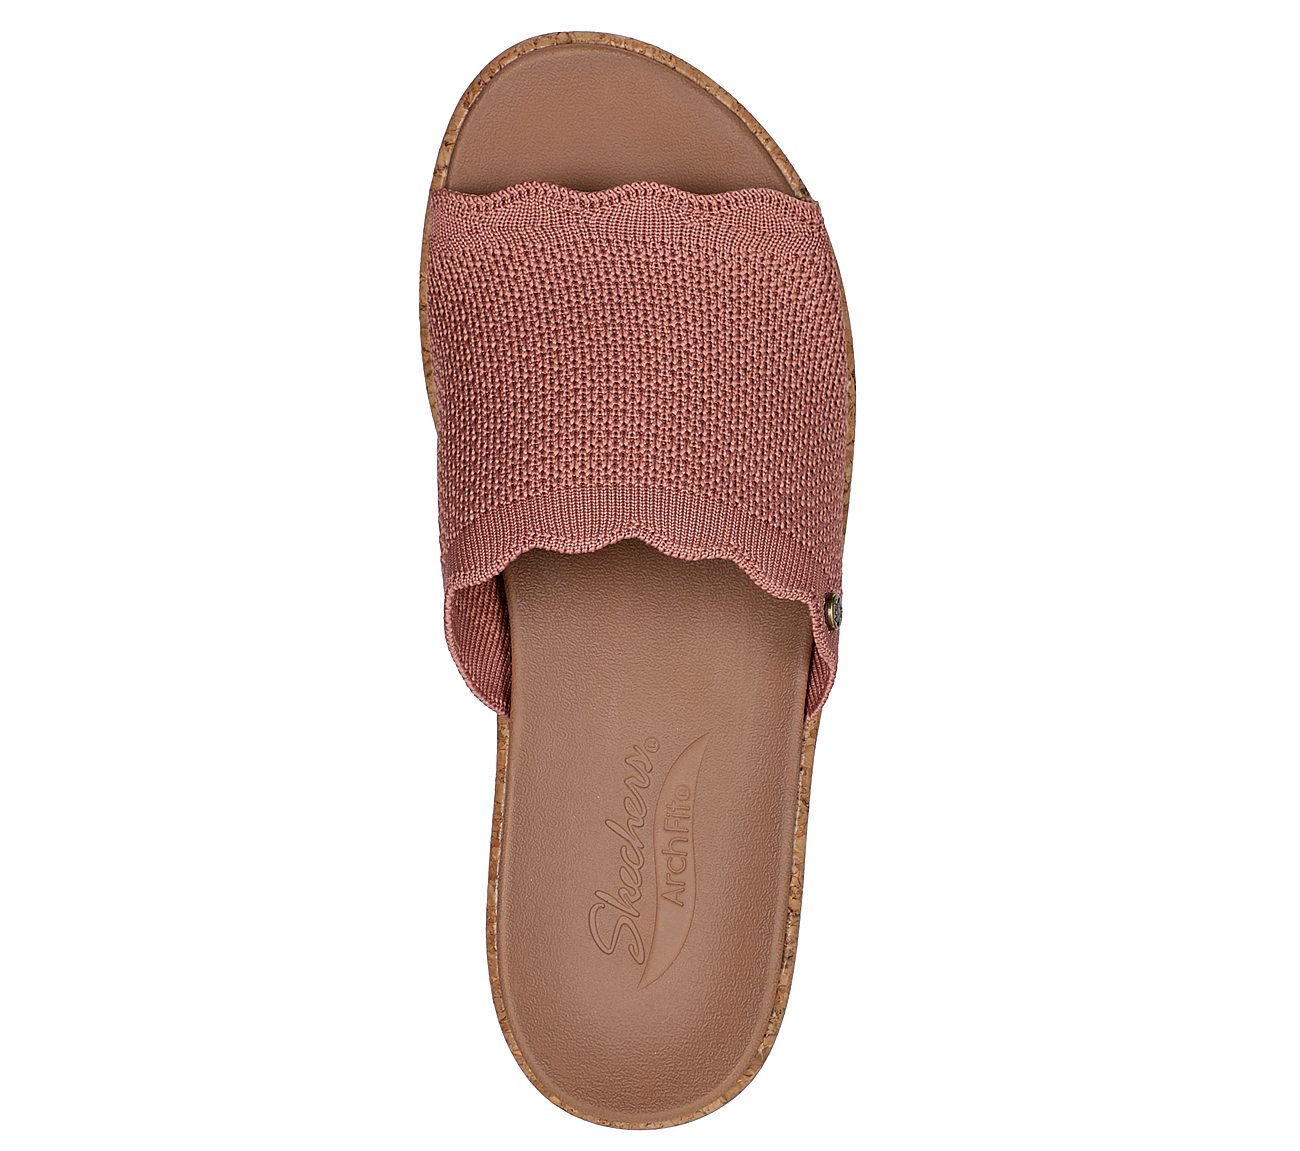 ARCH FIT BEVERLEE - JEMMA, ROSE Footwear Top View